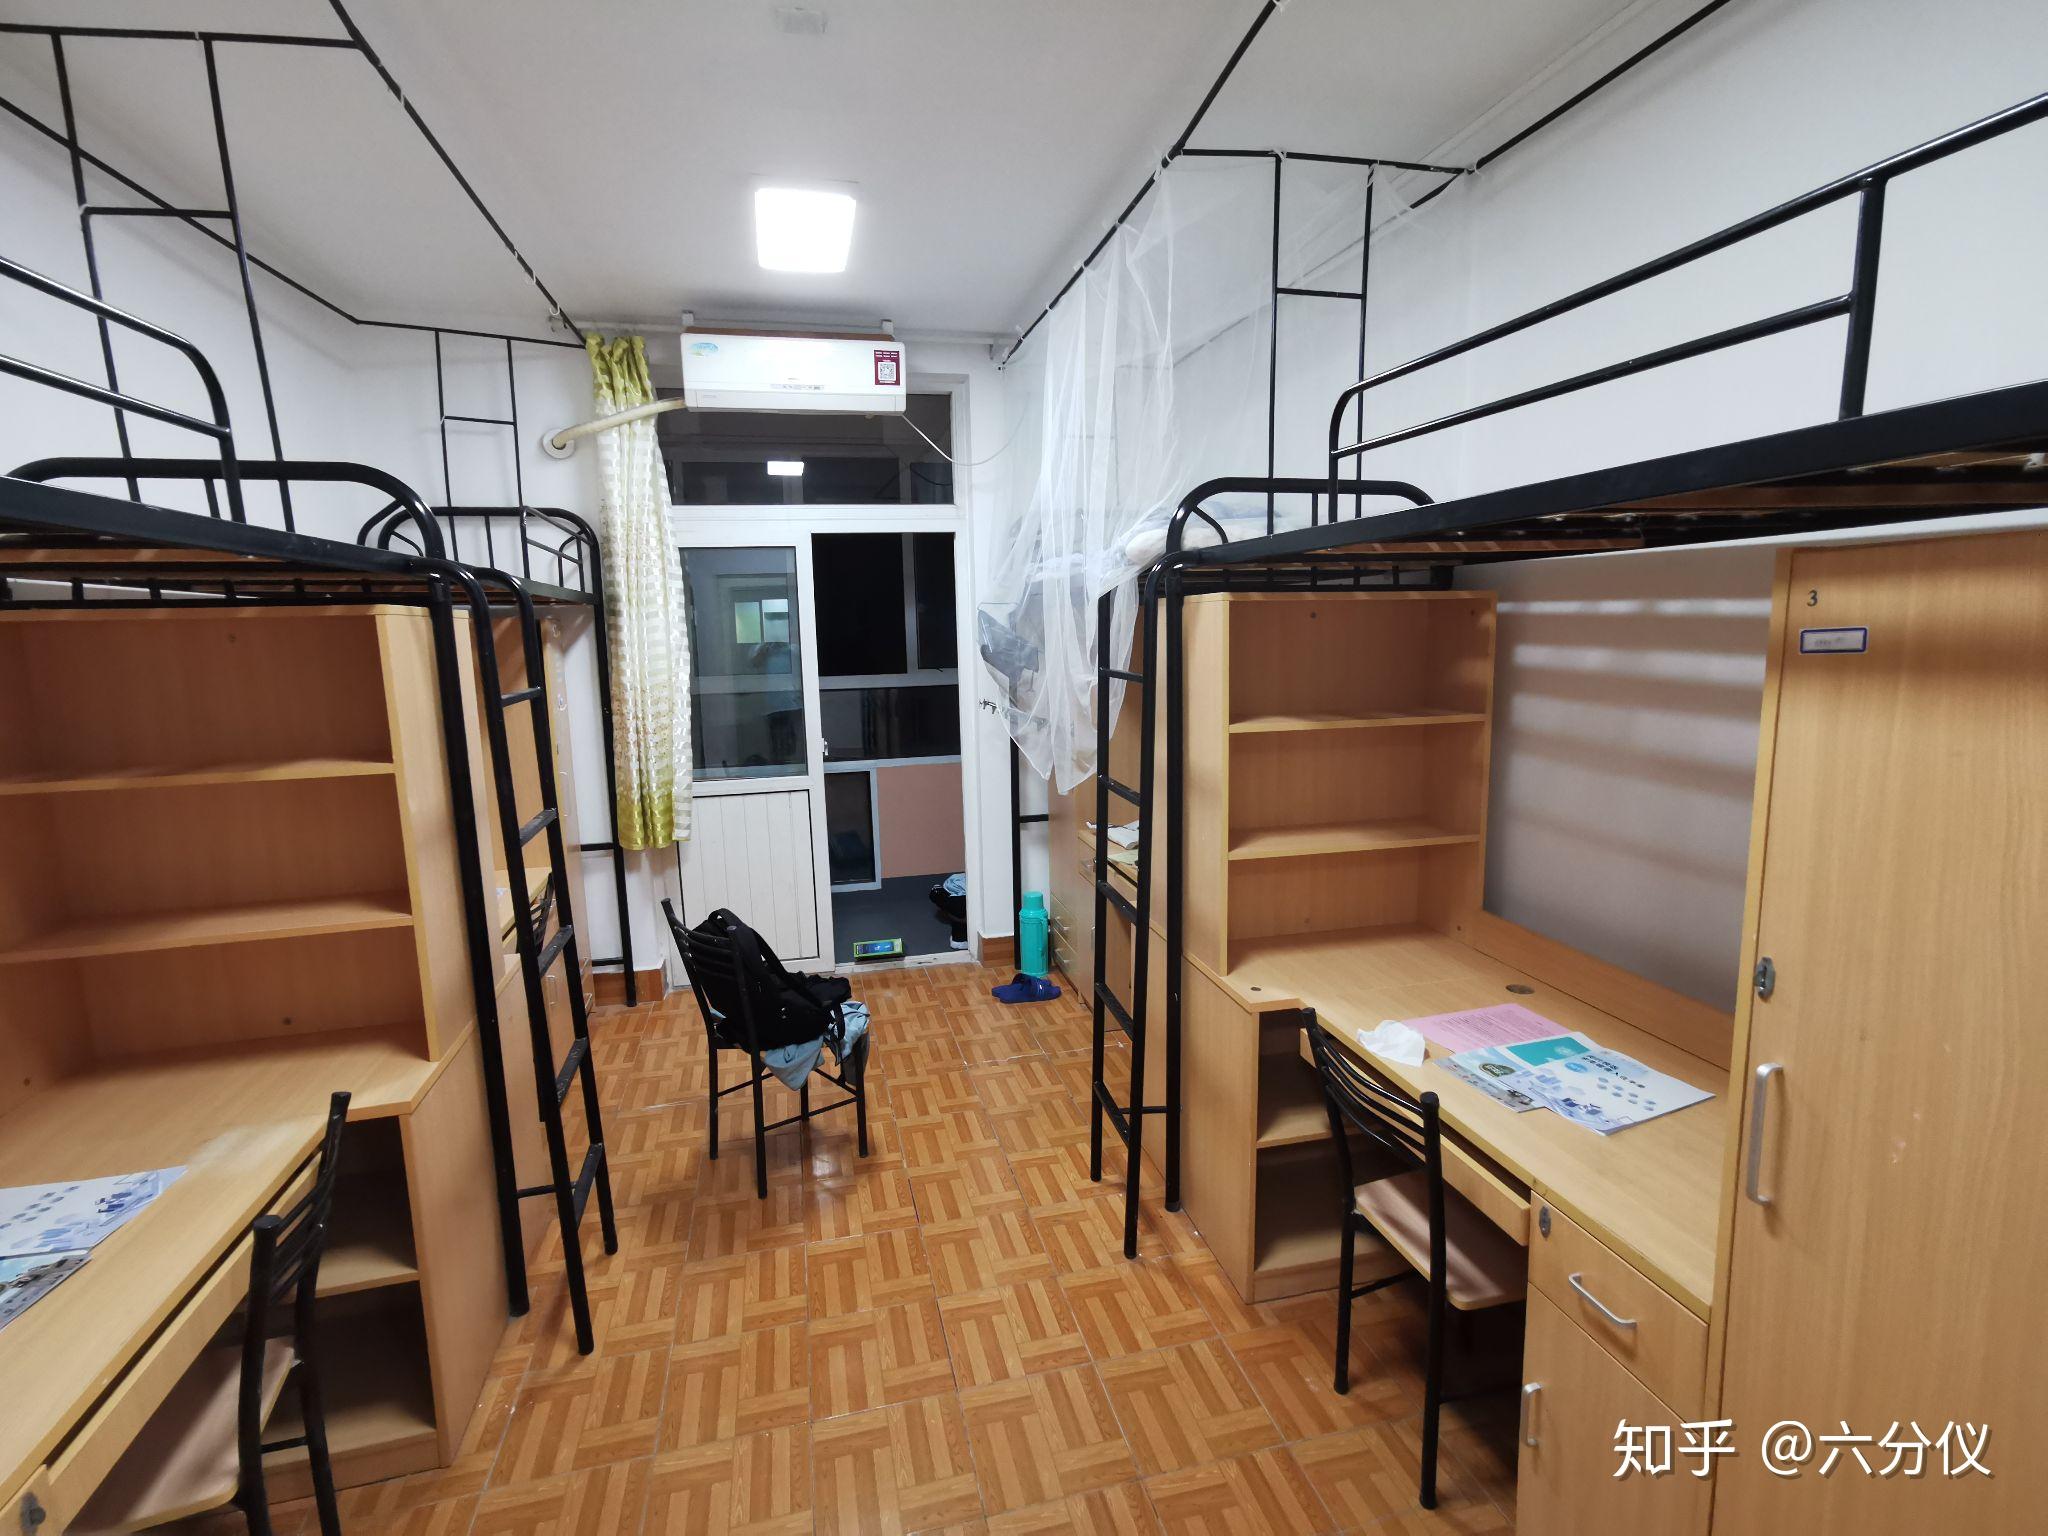 上海交通大学宿舍照片图片